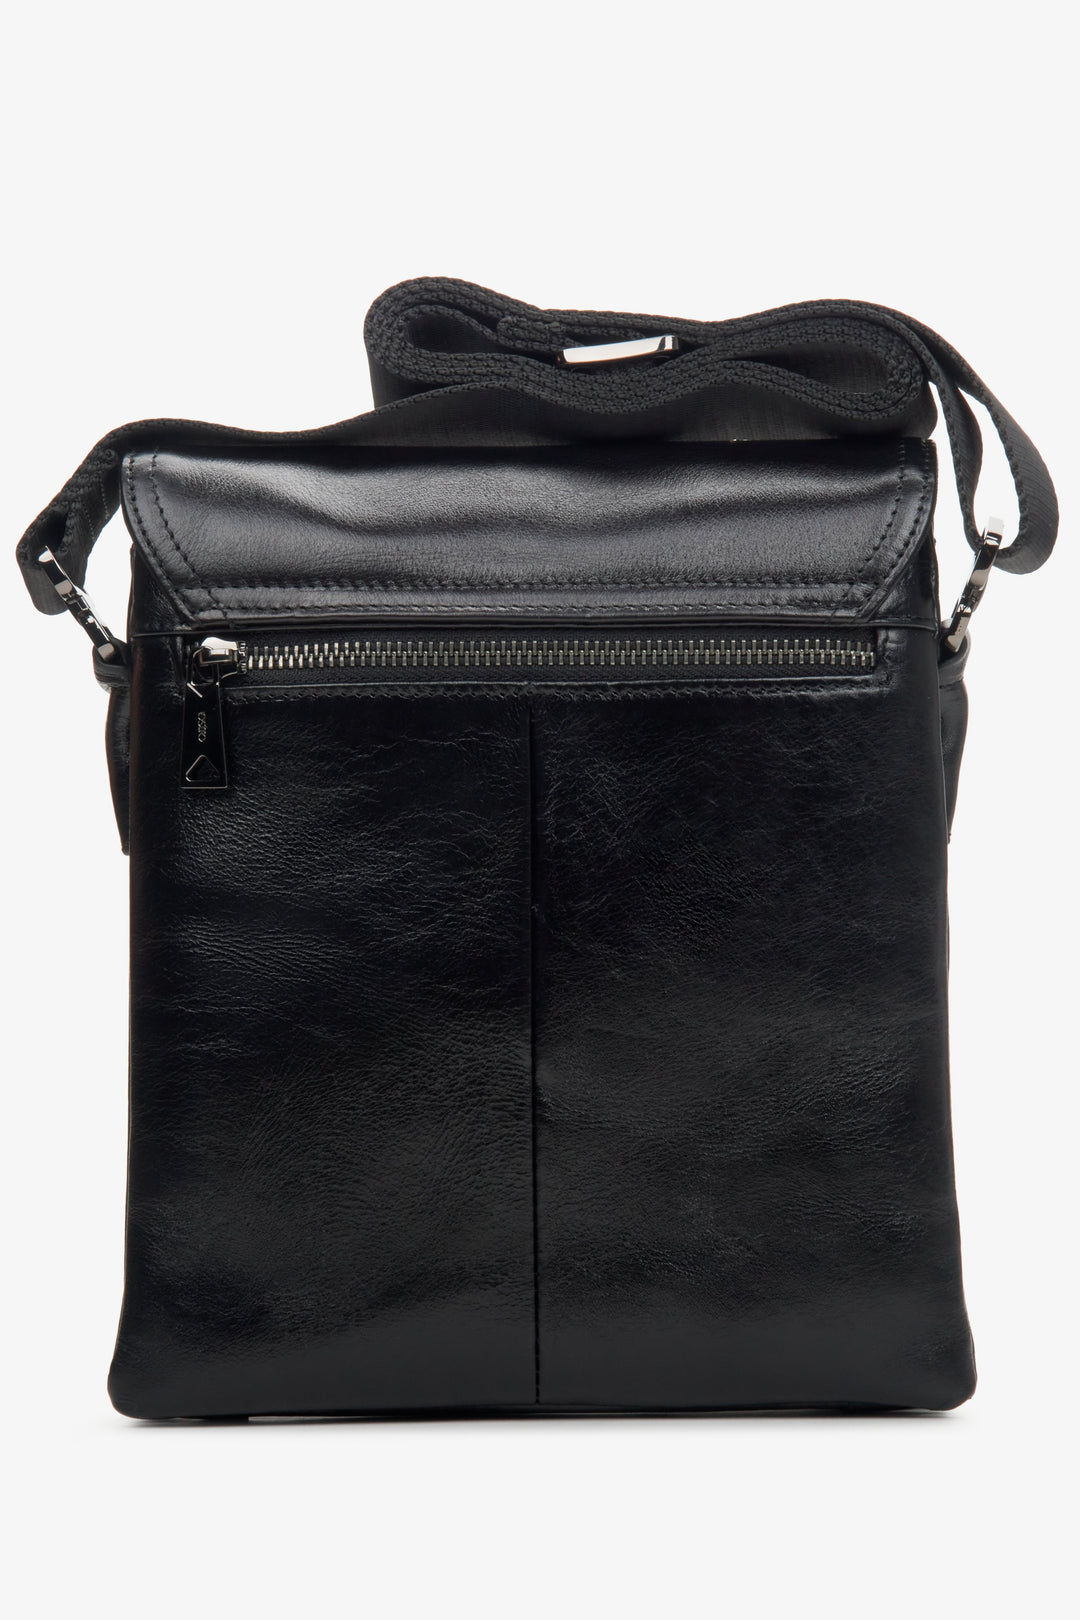  Men's bag with an adjustable strap in black color - reverse side.